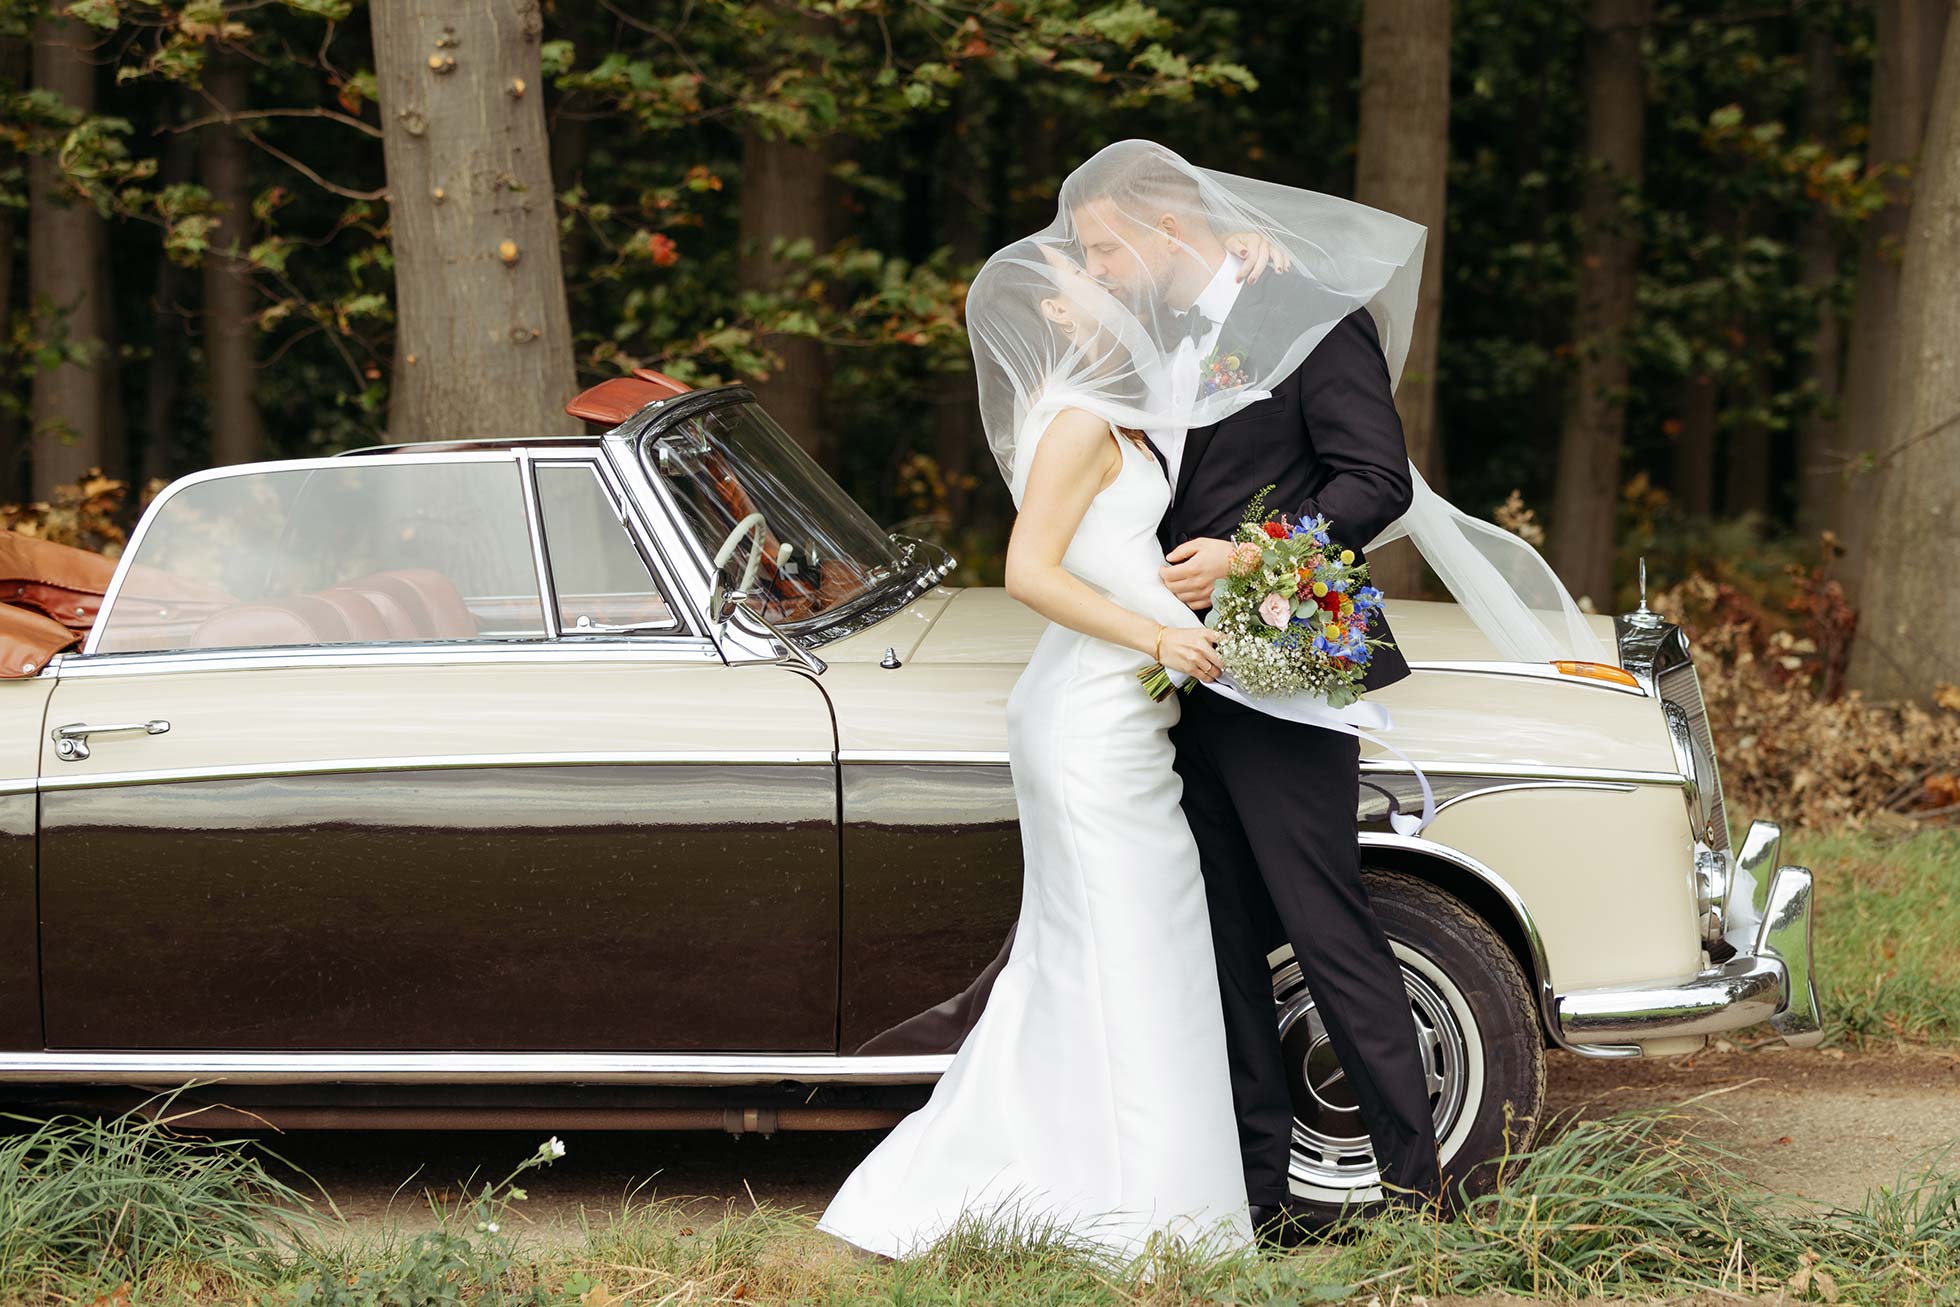 Ein küssendes Brautpaar vor dem Hochzeitauto. Der Schleier der Braut wäht über die Köpfe des Paares.